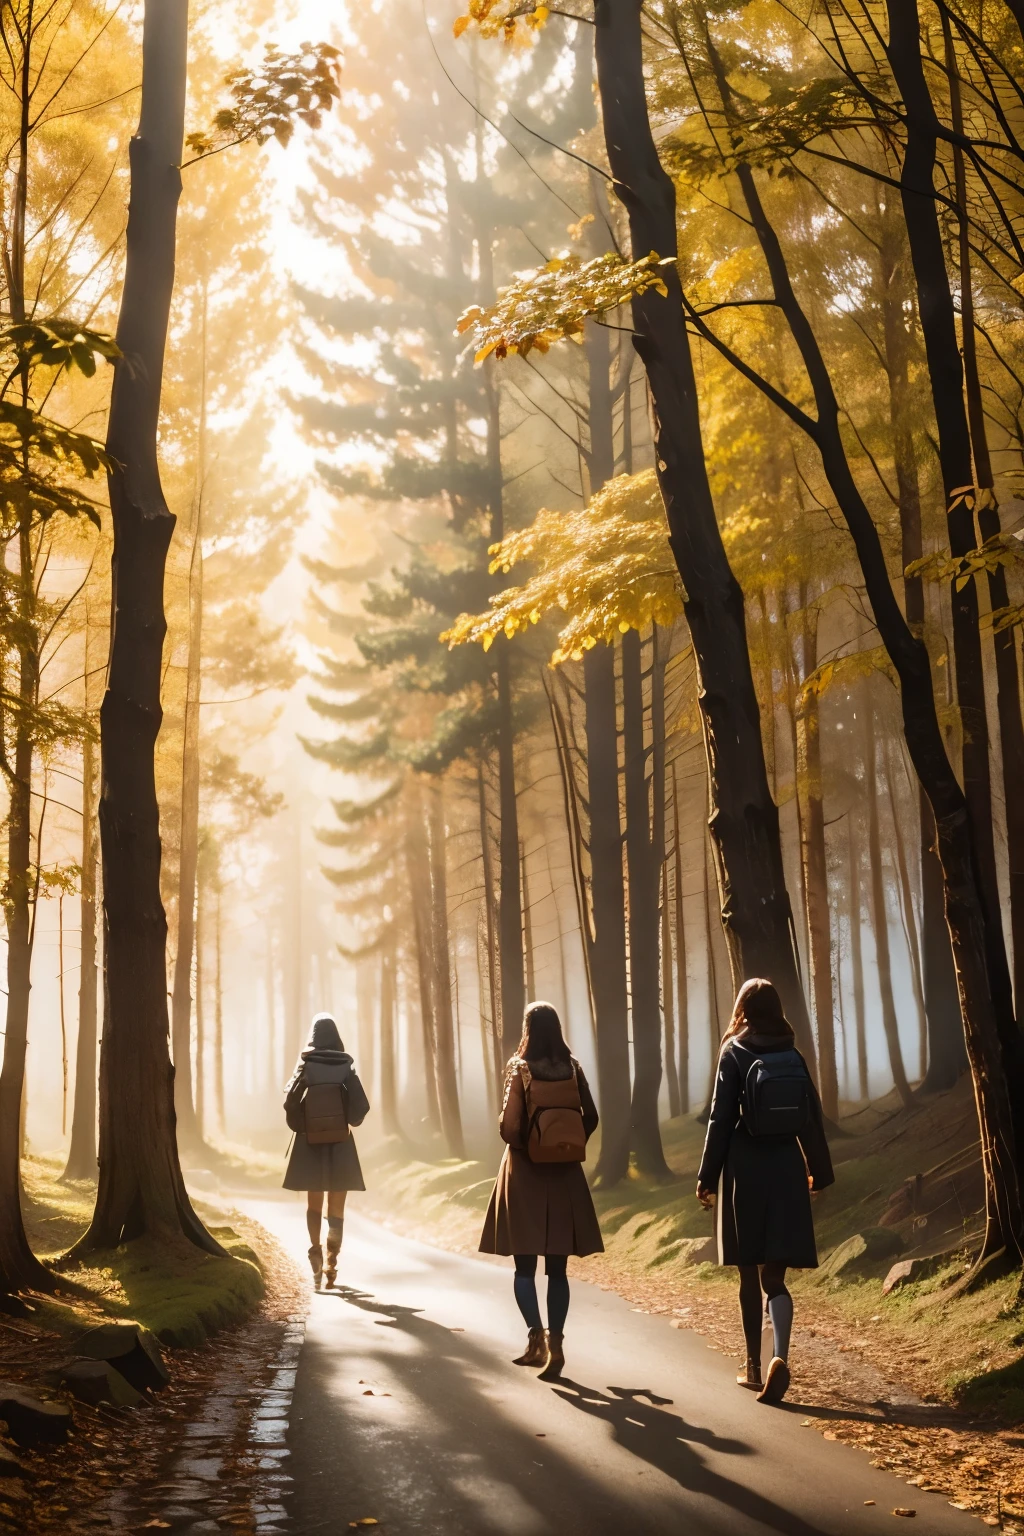 Drei Mädchen auf einem Weg durch den Wald, Nebel, Herbstlandschaft, sunlight filtering through the Nebel and branches